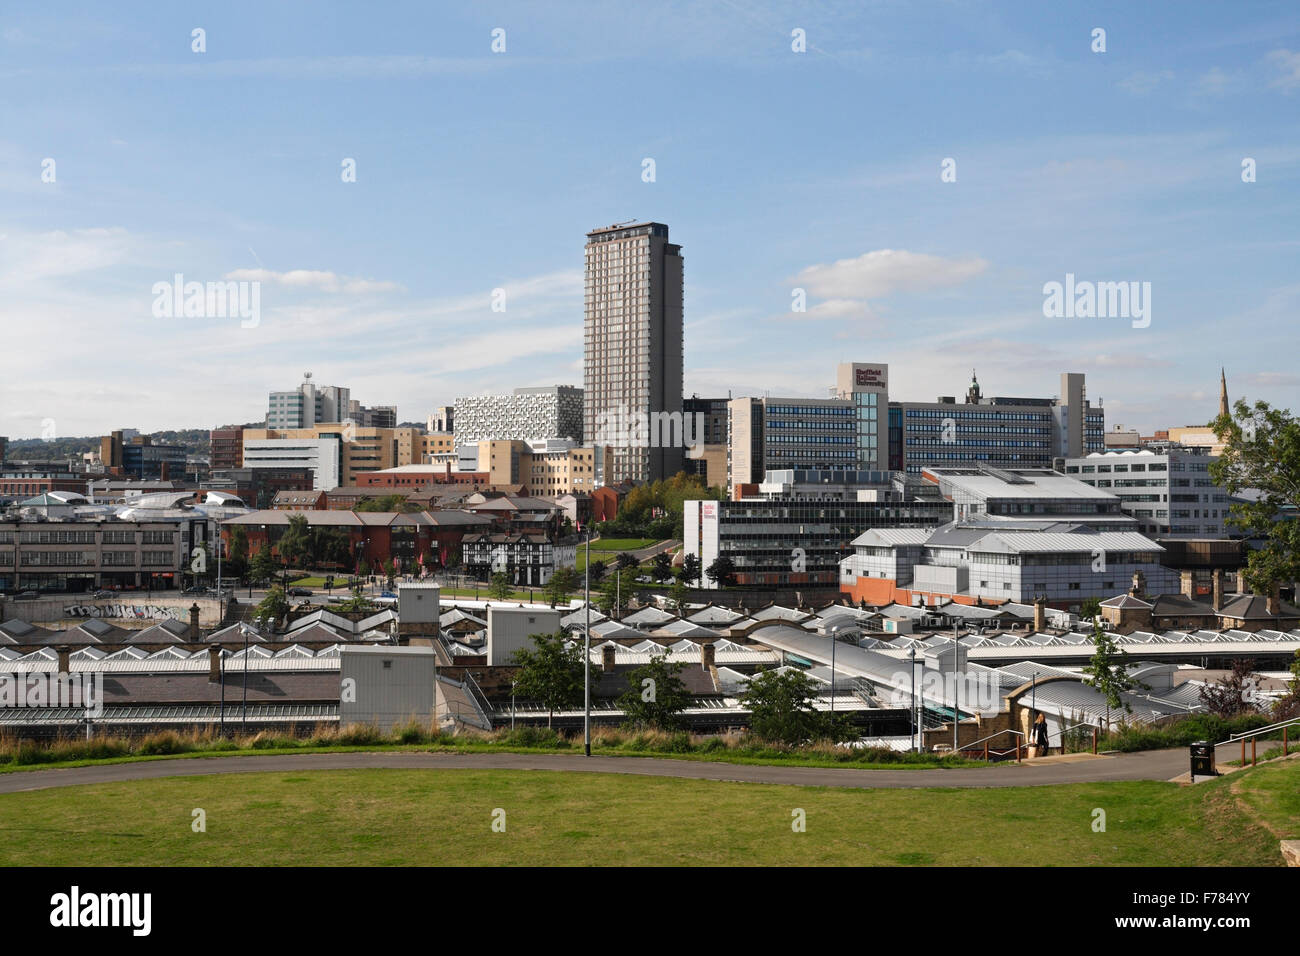 Vue panoramique du centre-ville de Sheffield Skyline Angleterre Royaume-Uni, paysage urbain anglais paysage urbain Banque D'Images